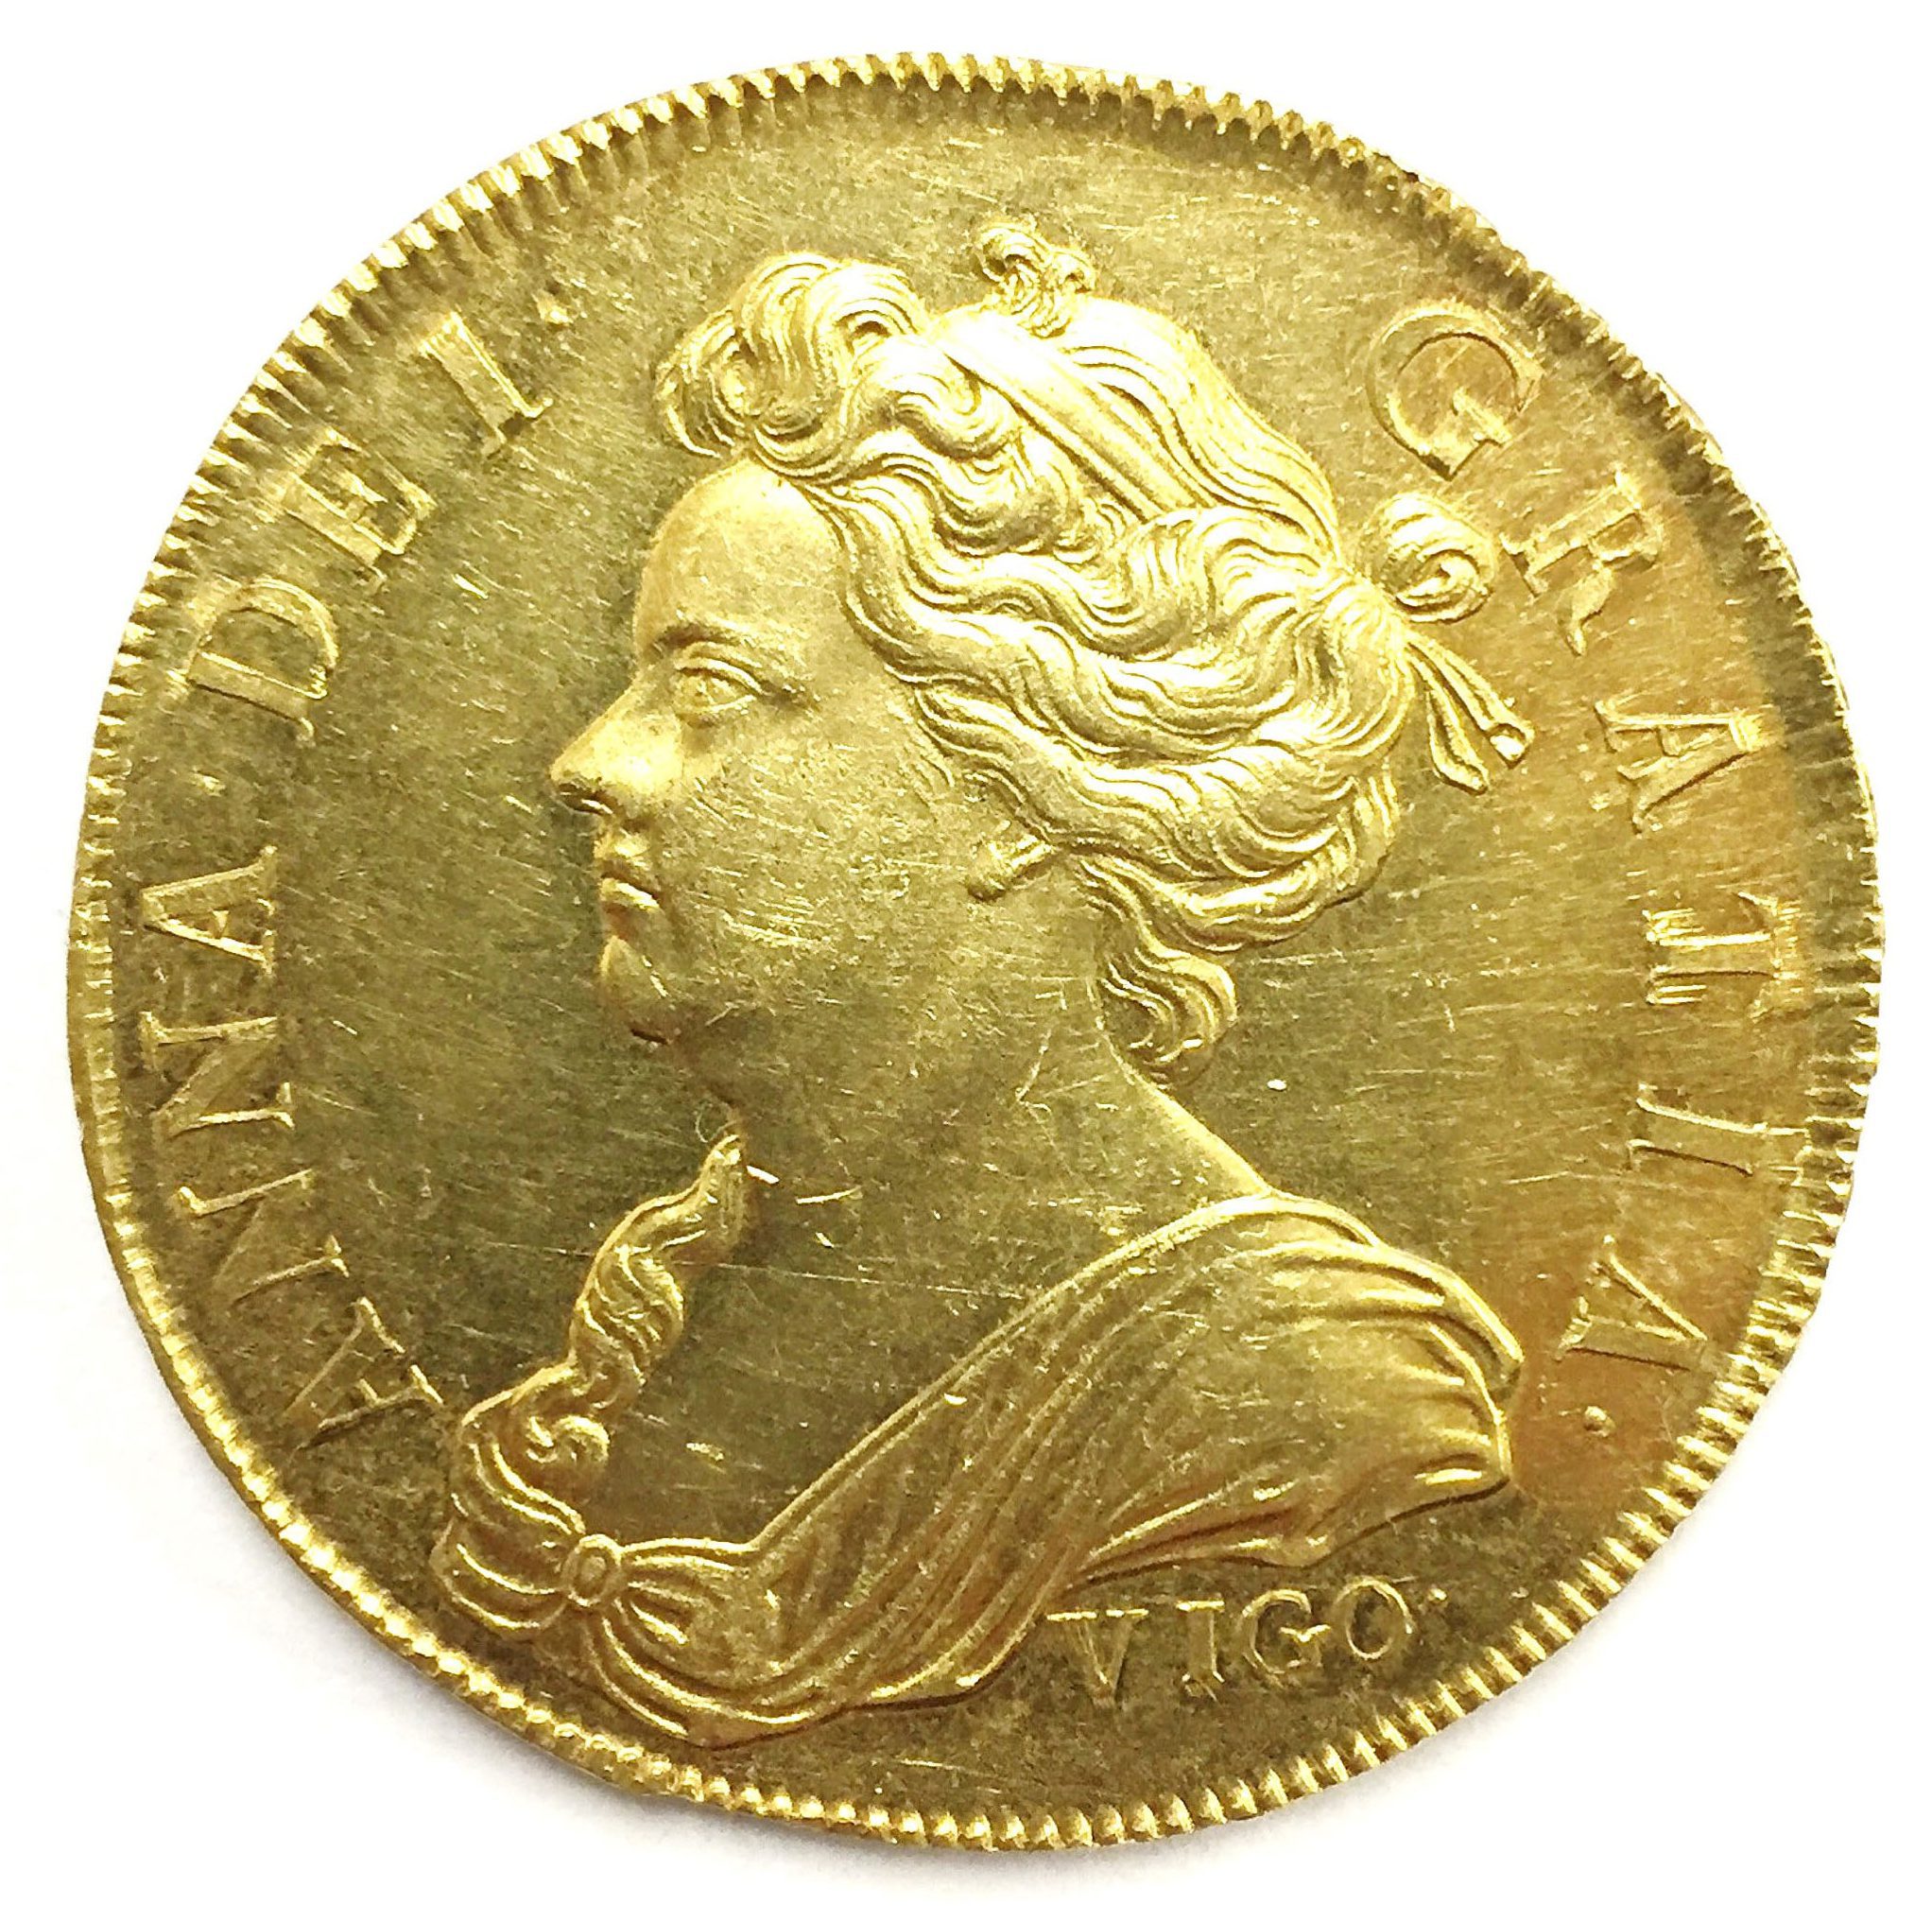 ps_Queen-Anne-Vigo-coin.jpg